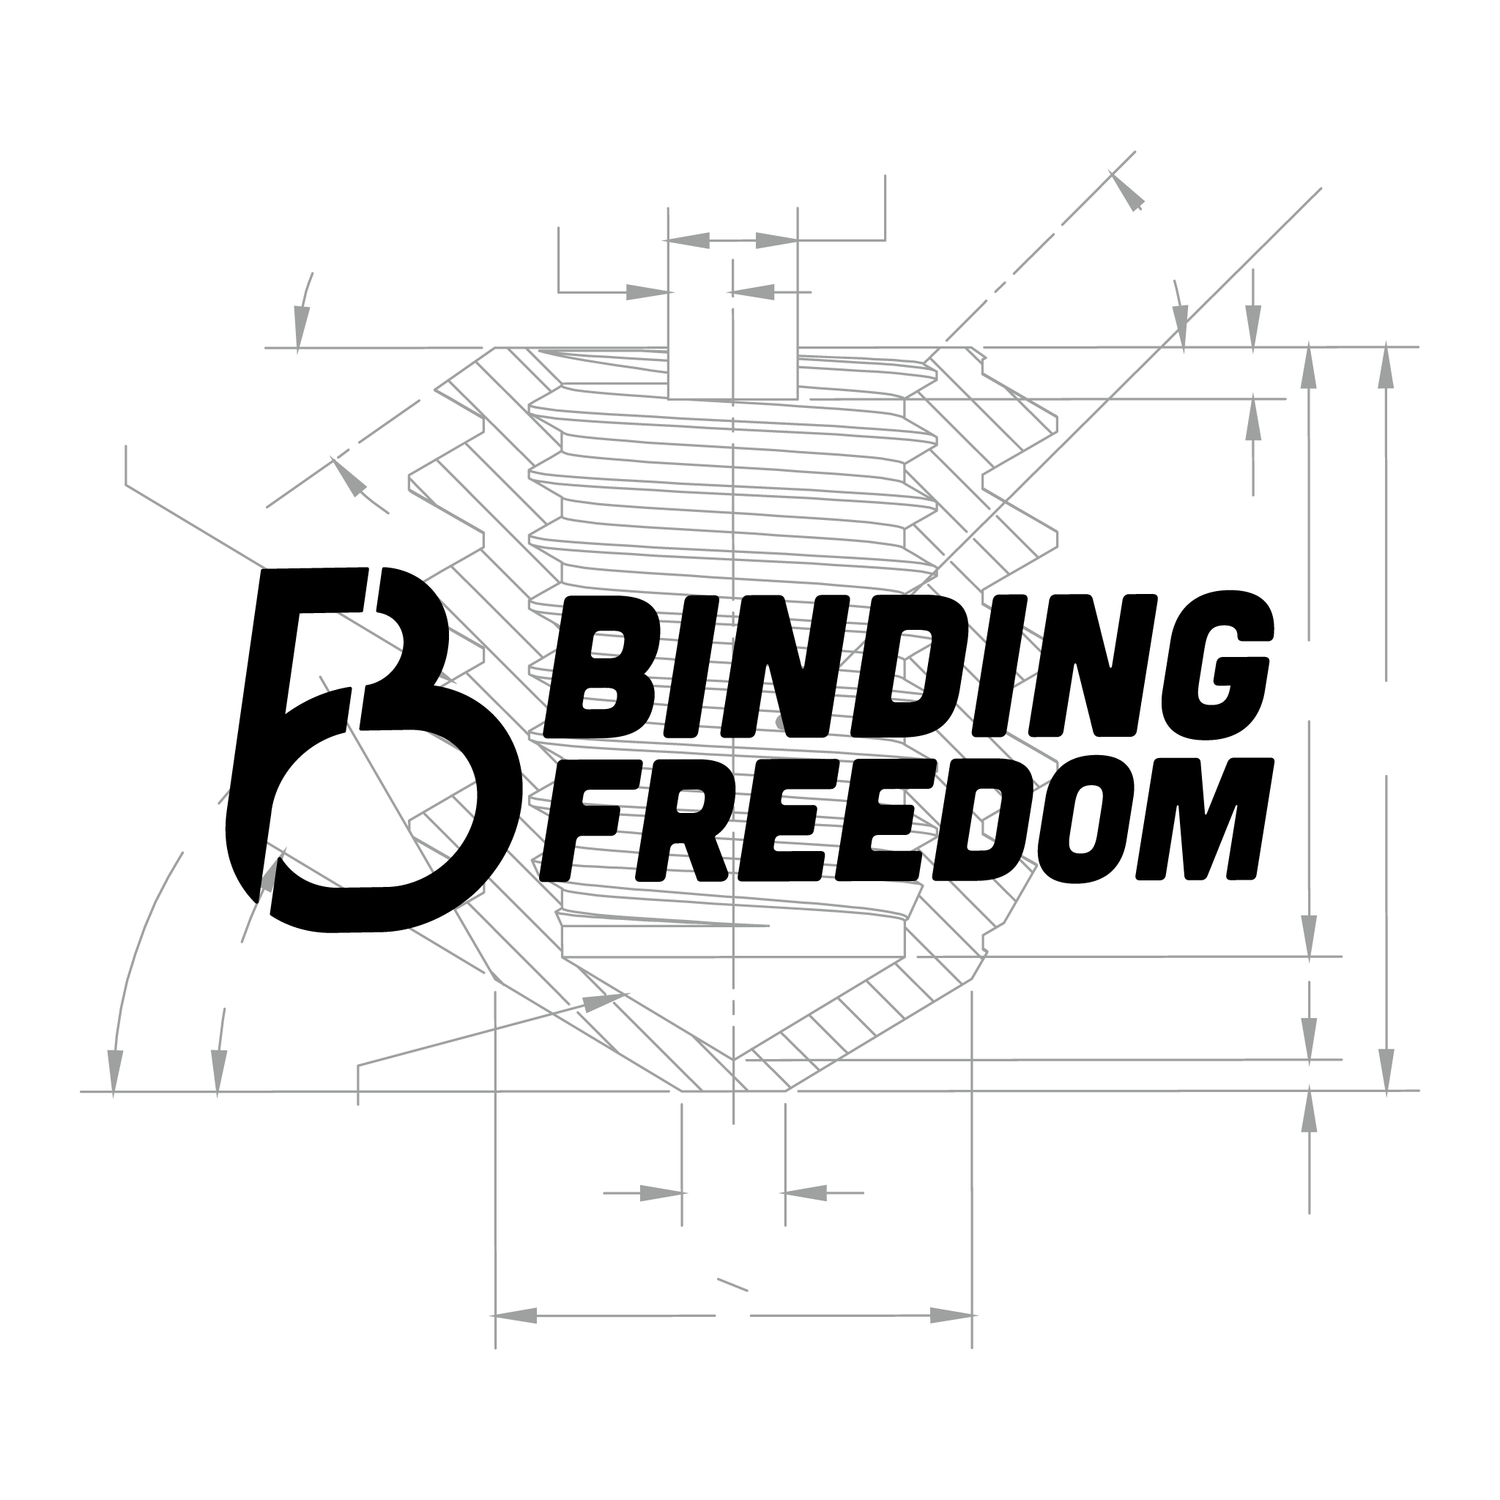 BINDING FREEDOM